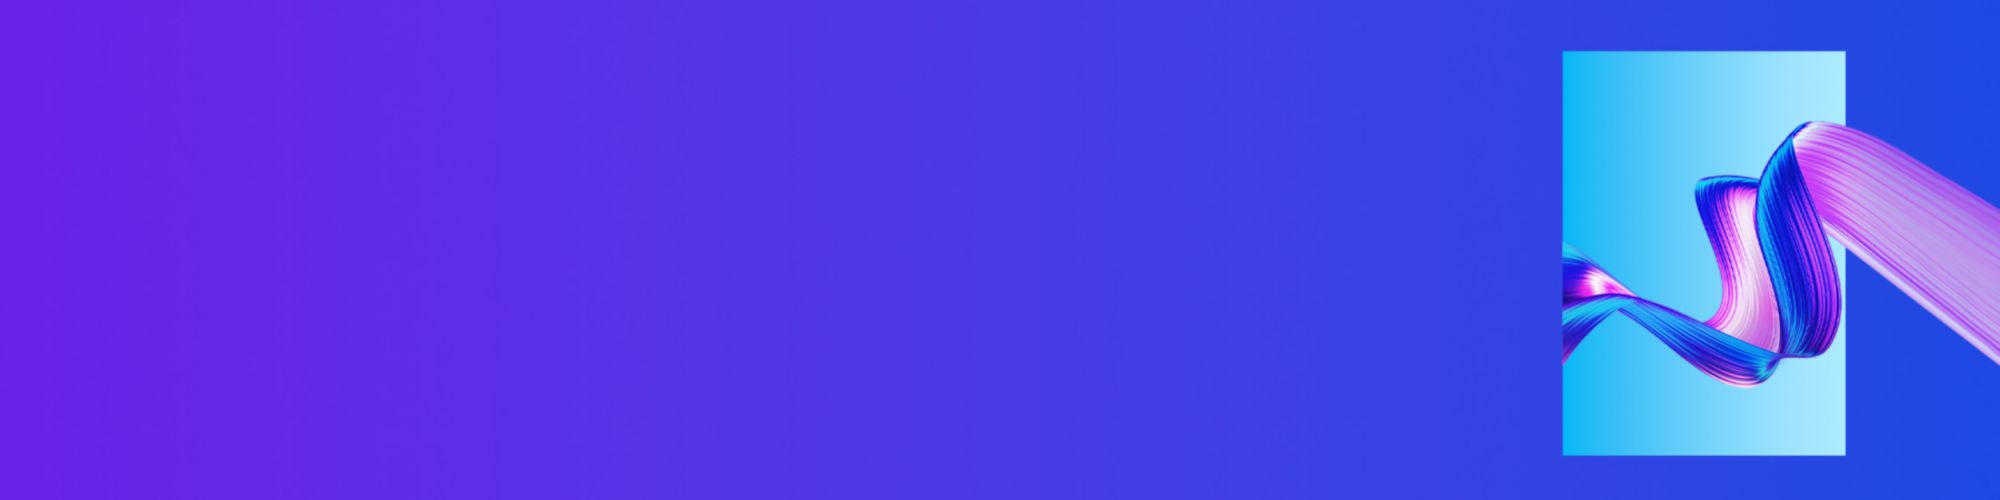 violet-and-blue-3d-design-banner